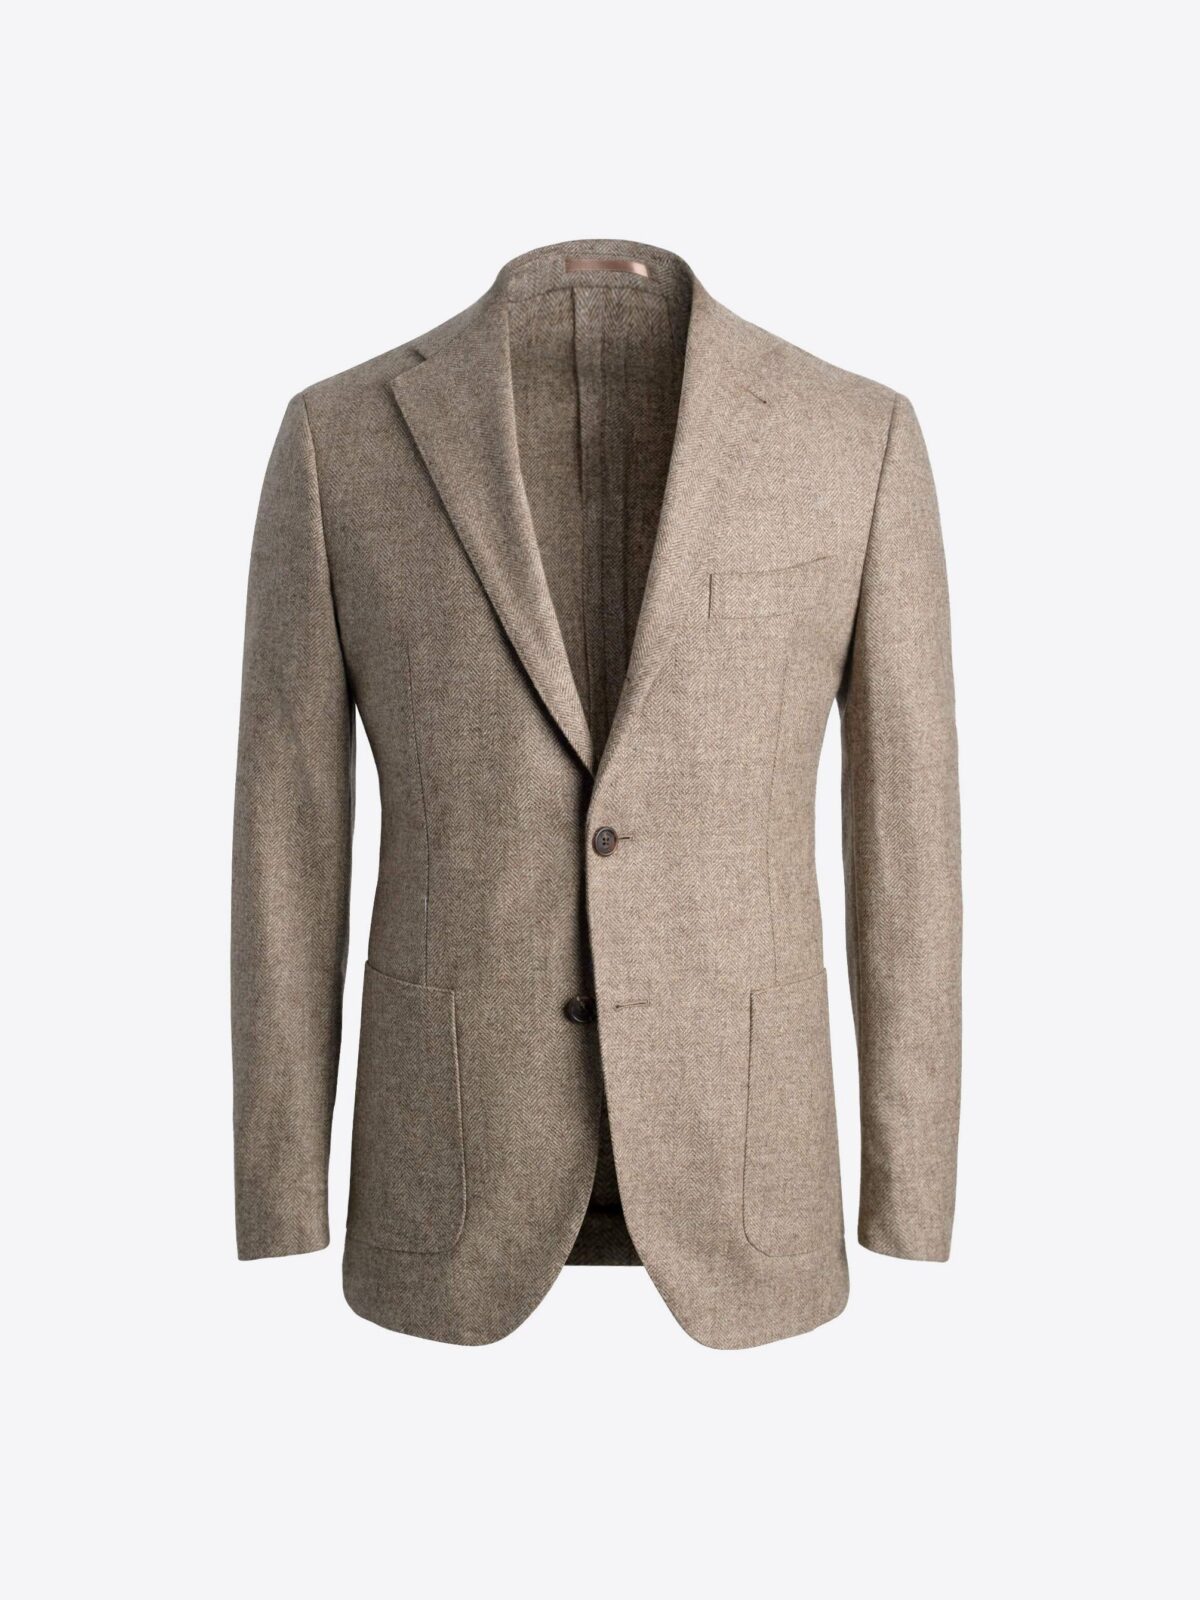 Bedford Taupe Herringbone Tweed Jacket - Custom Fit Tailored Clothing